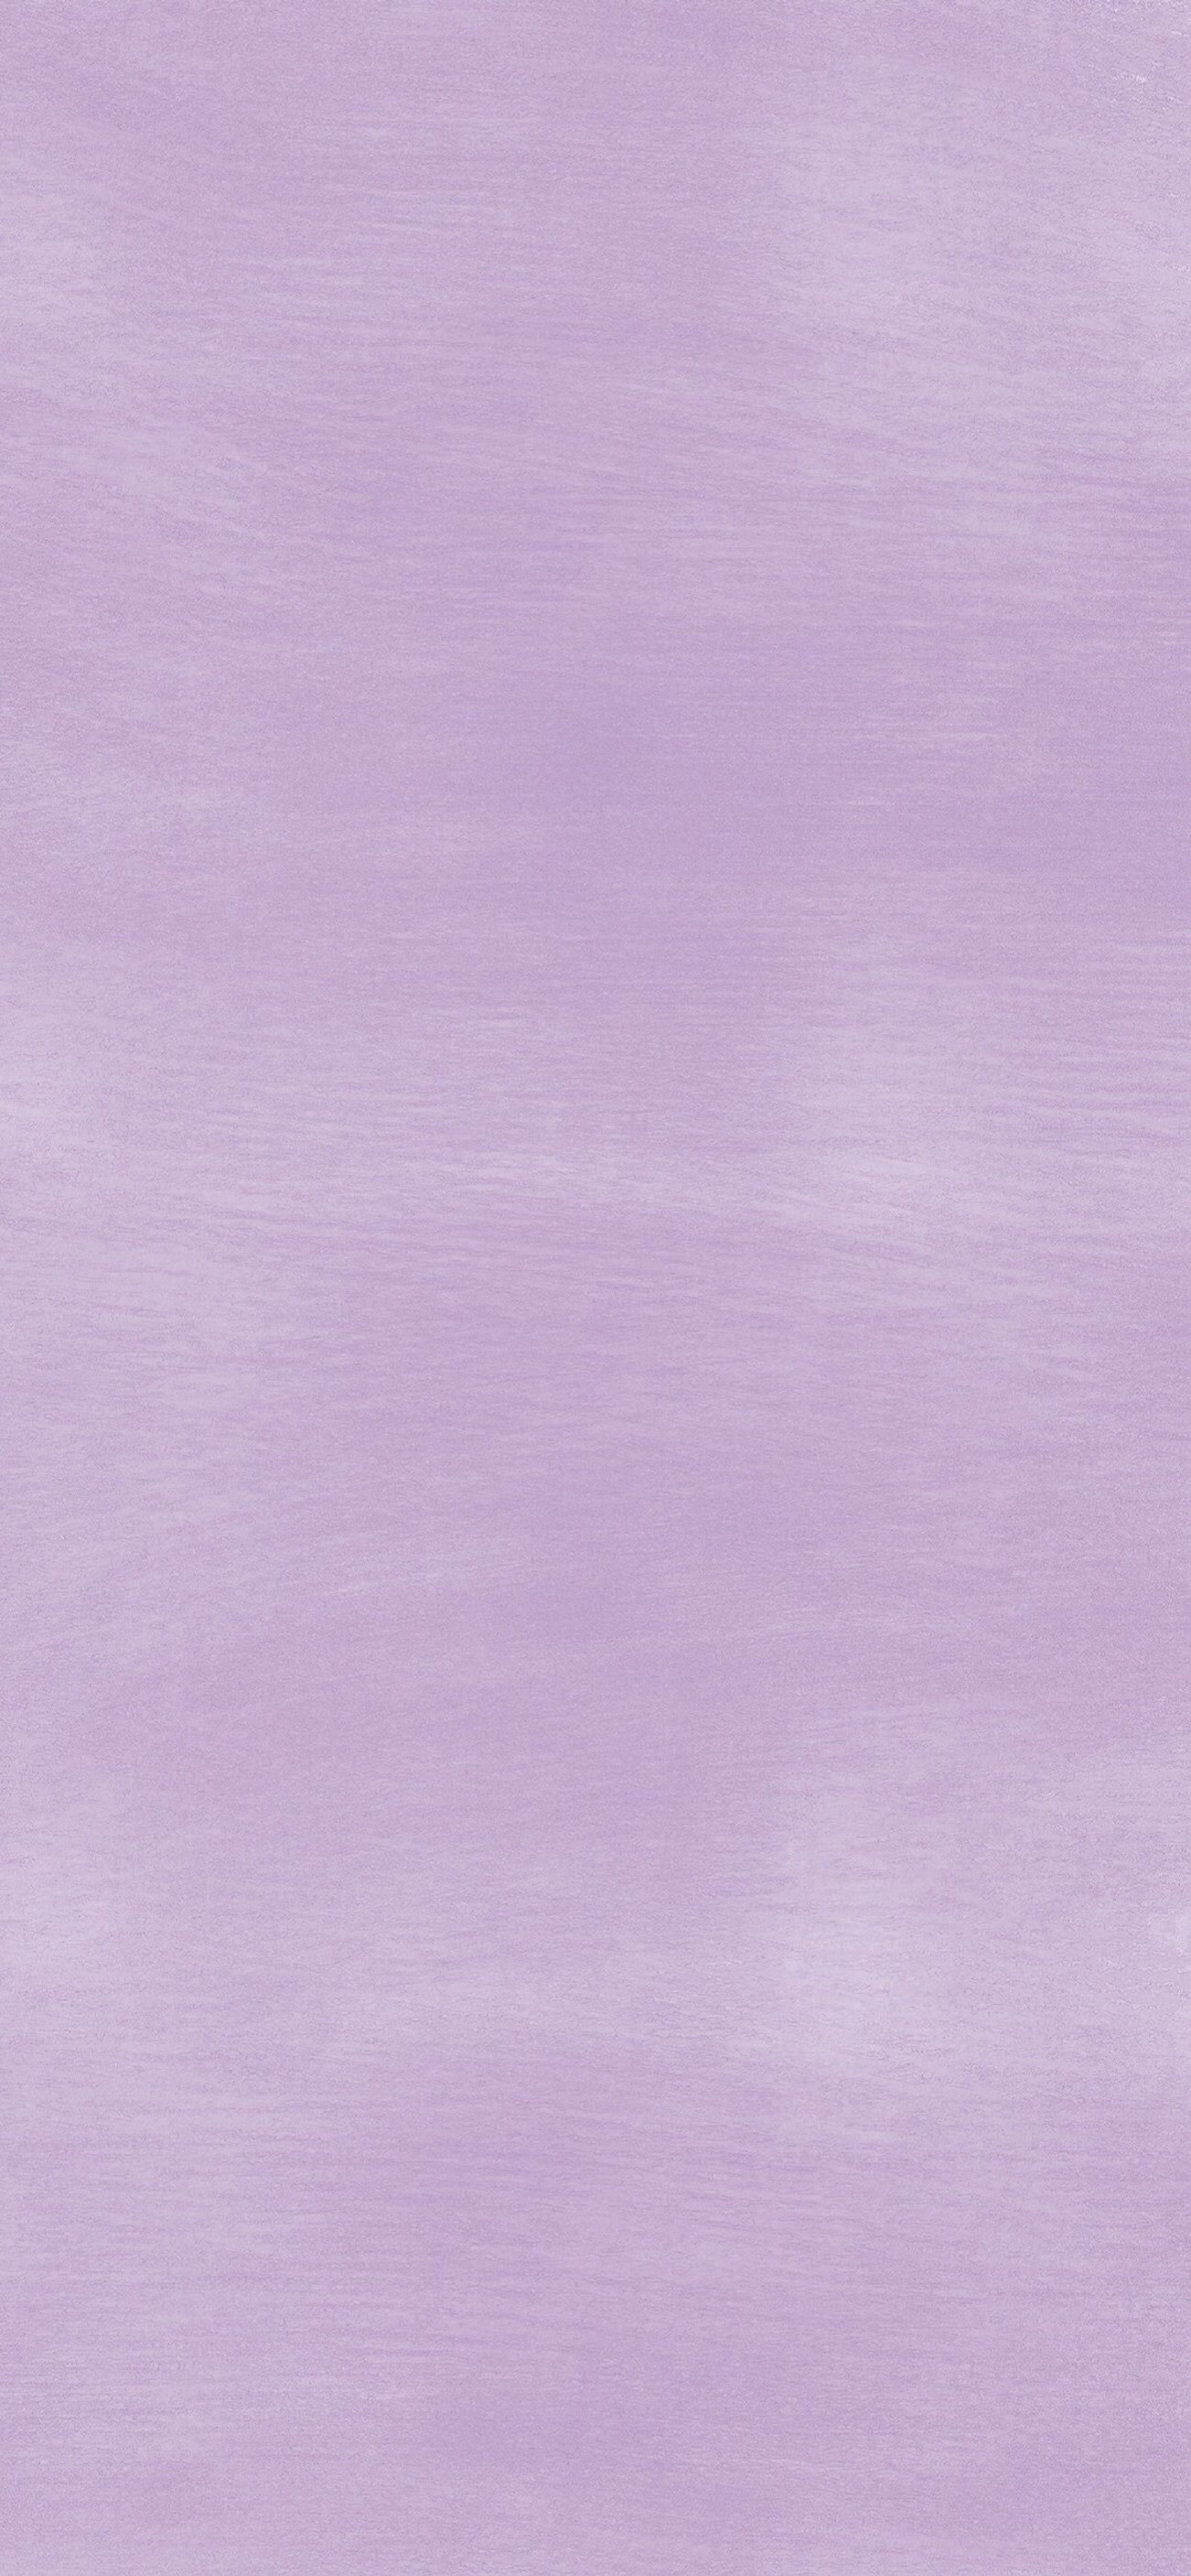 淡紫色纯色底图 壁纸图片